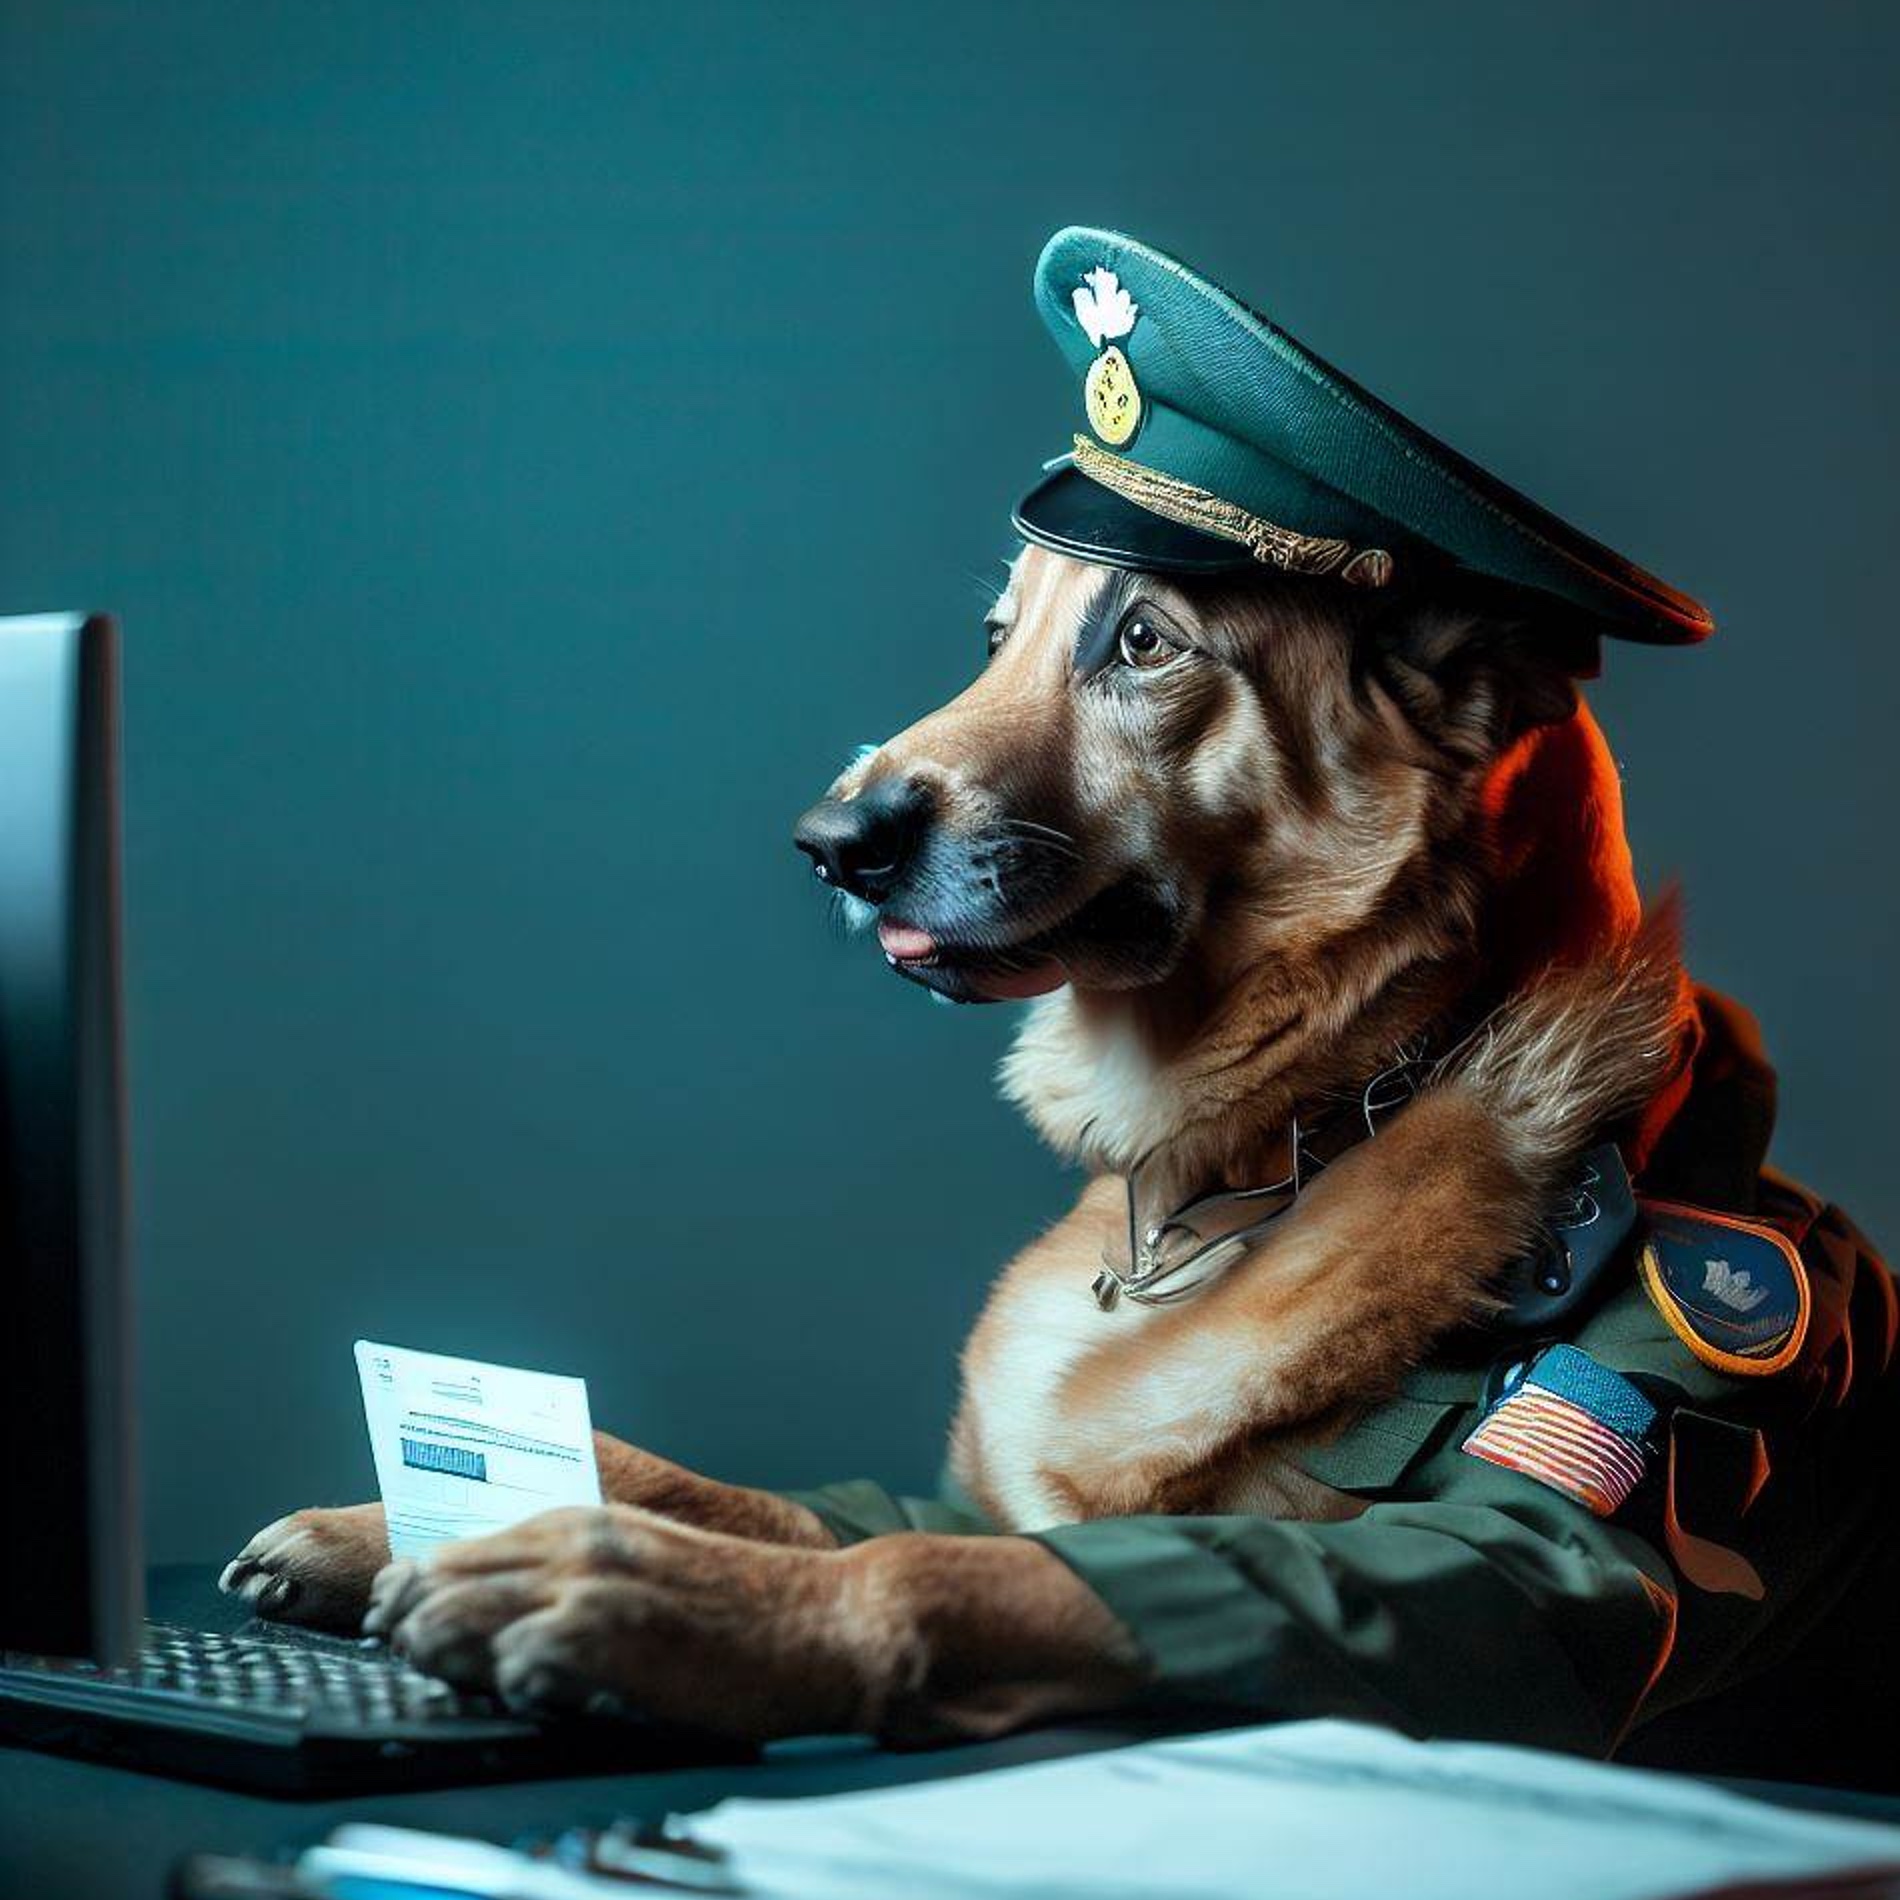 Bild: Hund in Uniform, der vor einem Computer sitzt und einen Ausweis kontrolliert